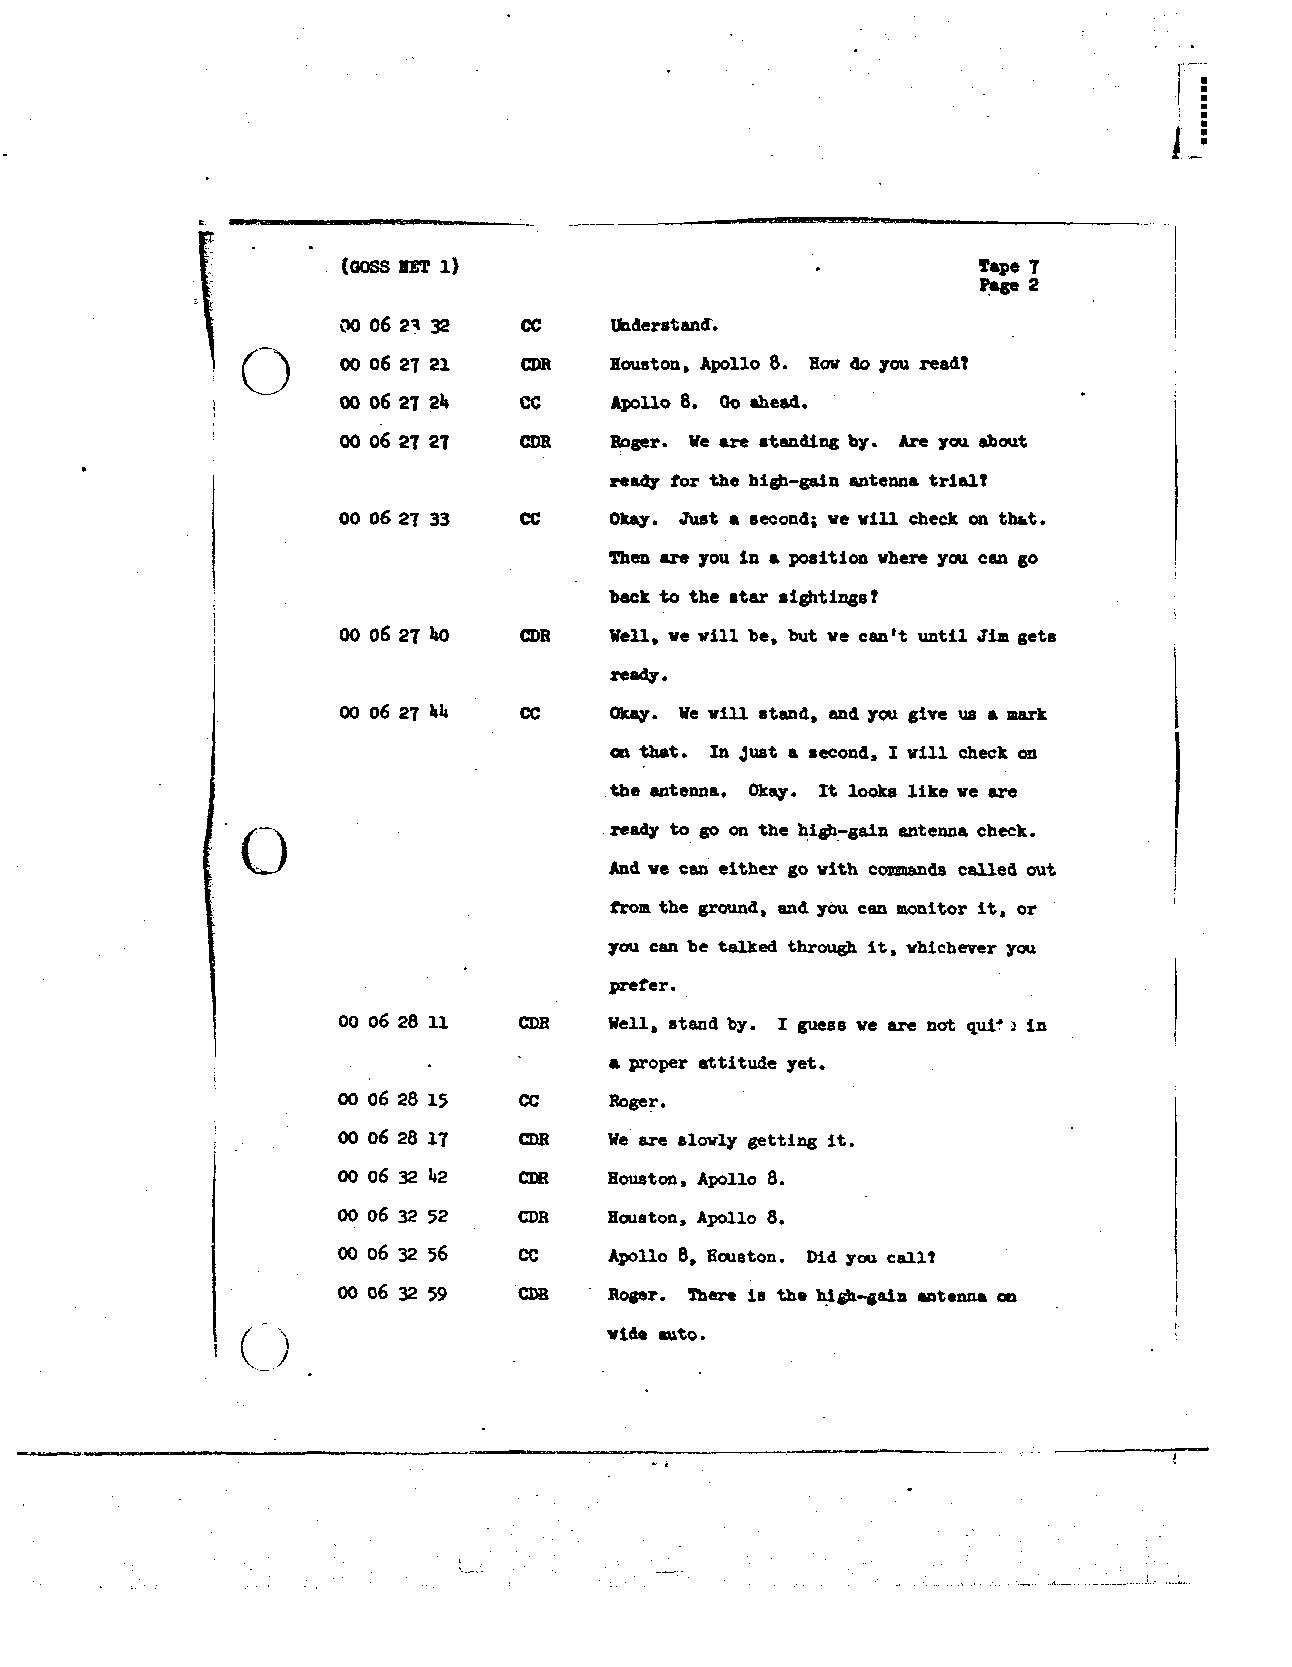 Page 64 of Apollo 8’s original transcript